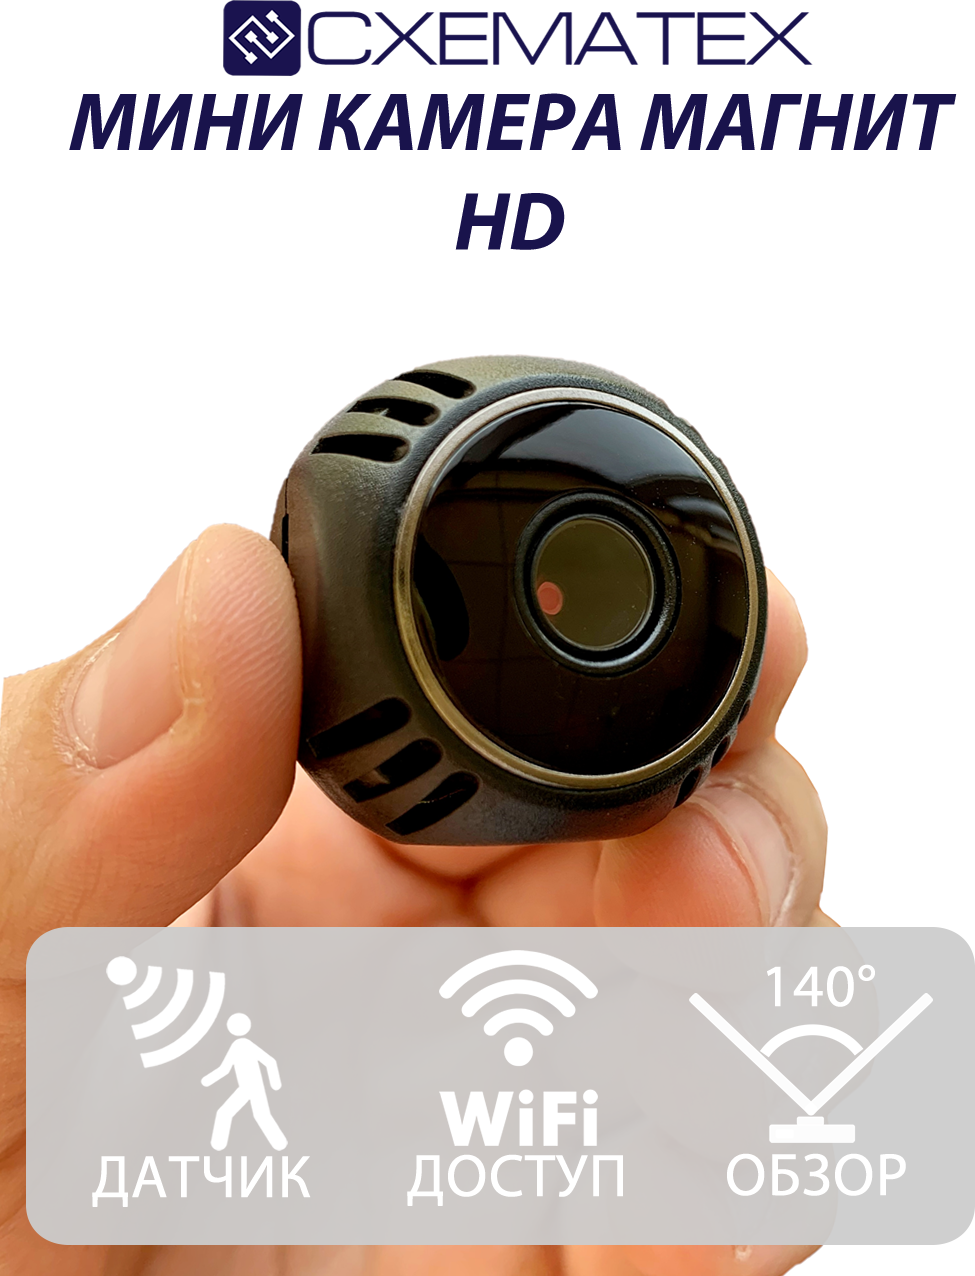 Самая Маленькая Беспроводная Камера Магнит W8 / Камера Wi-Fi